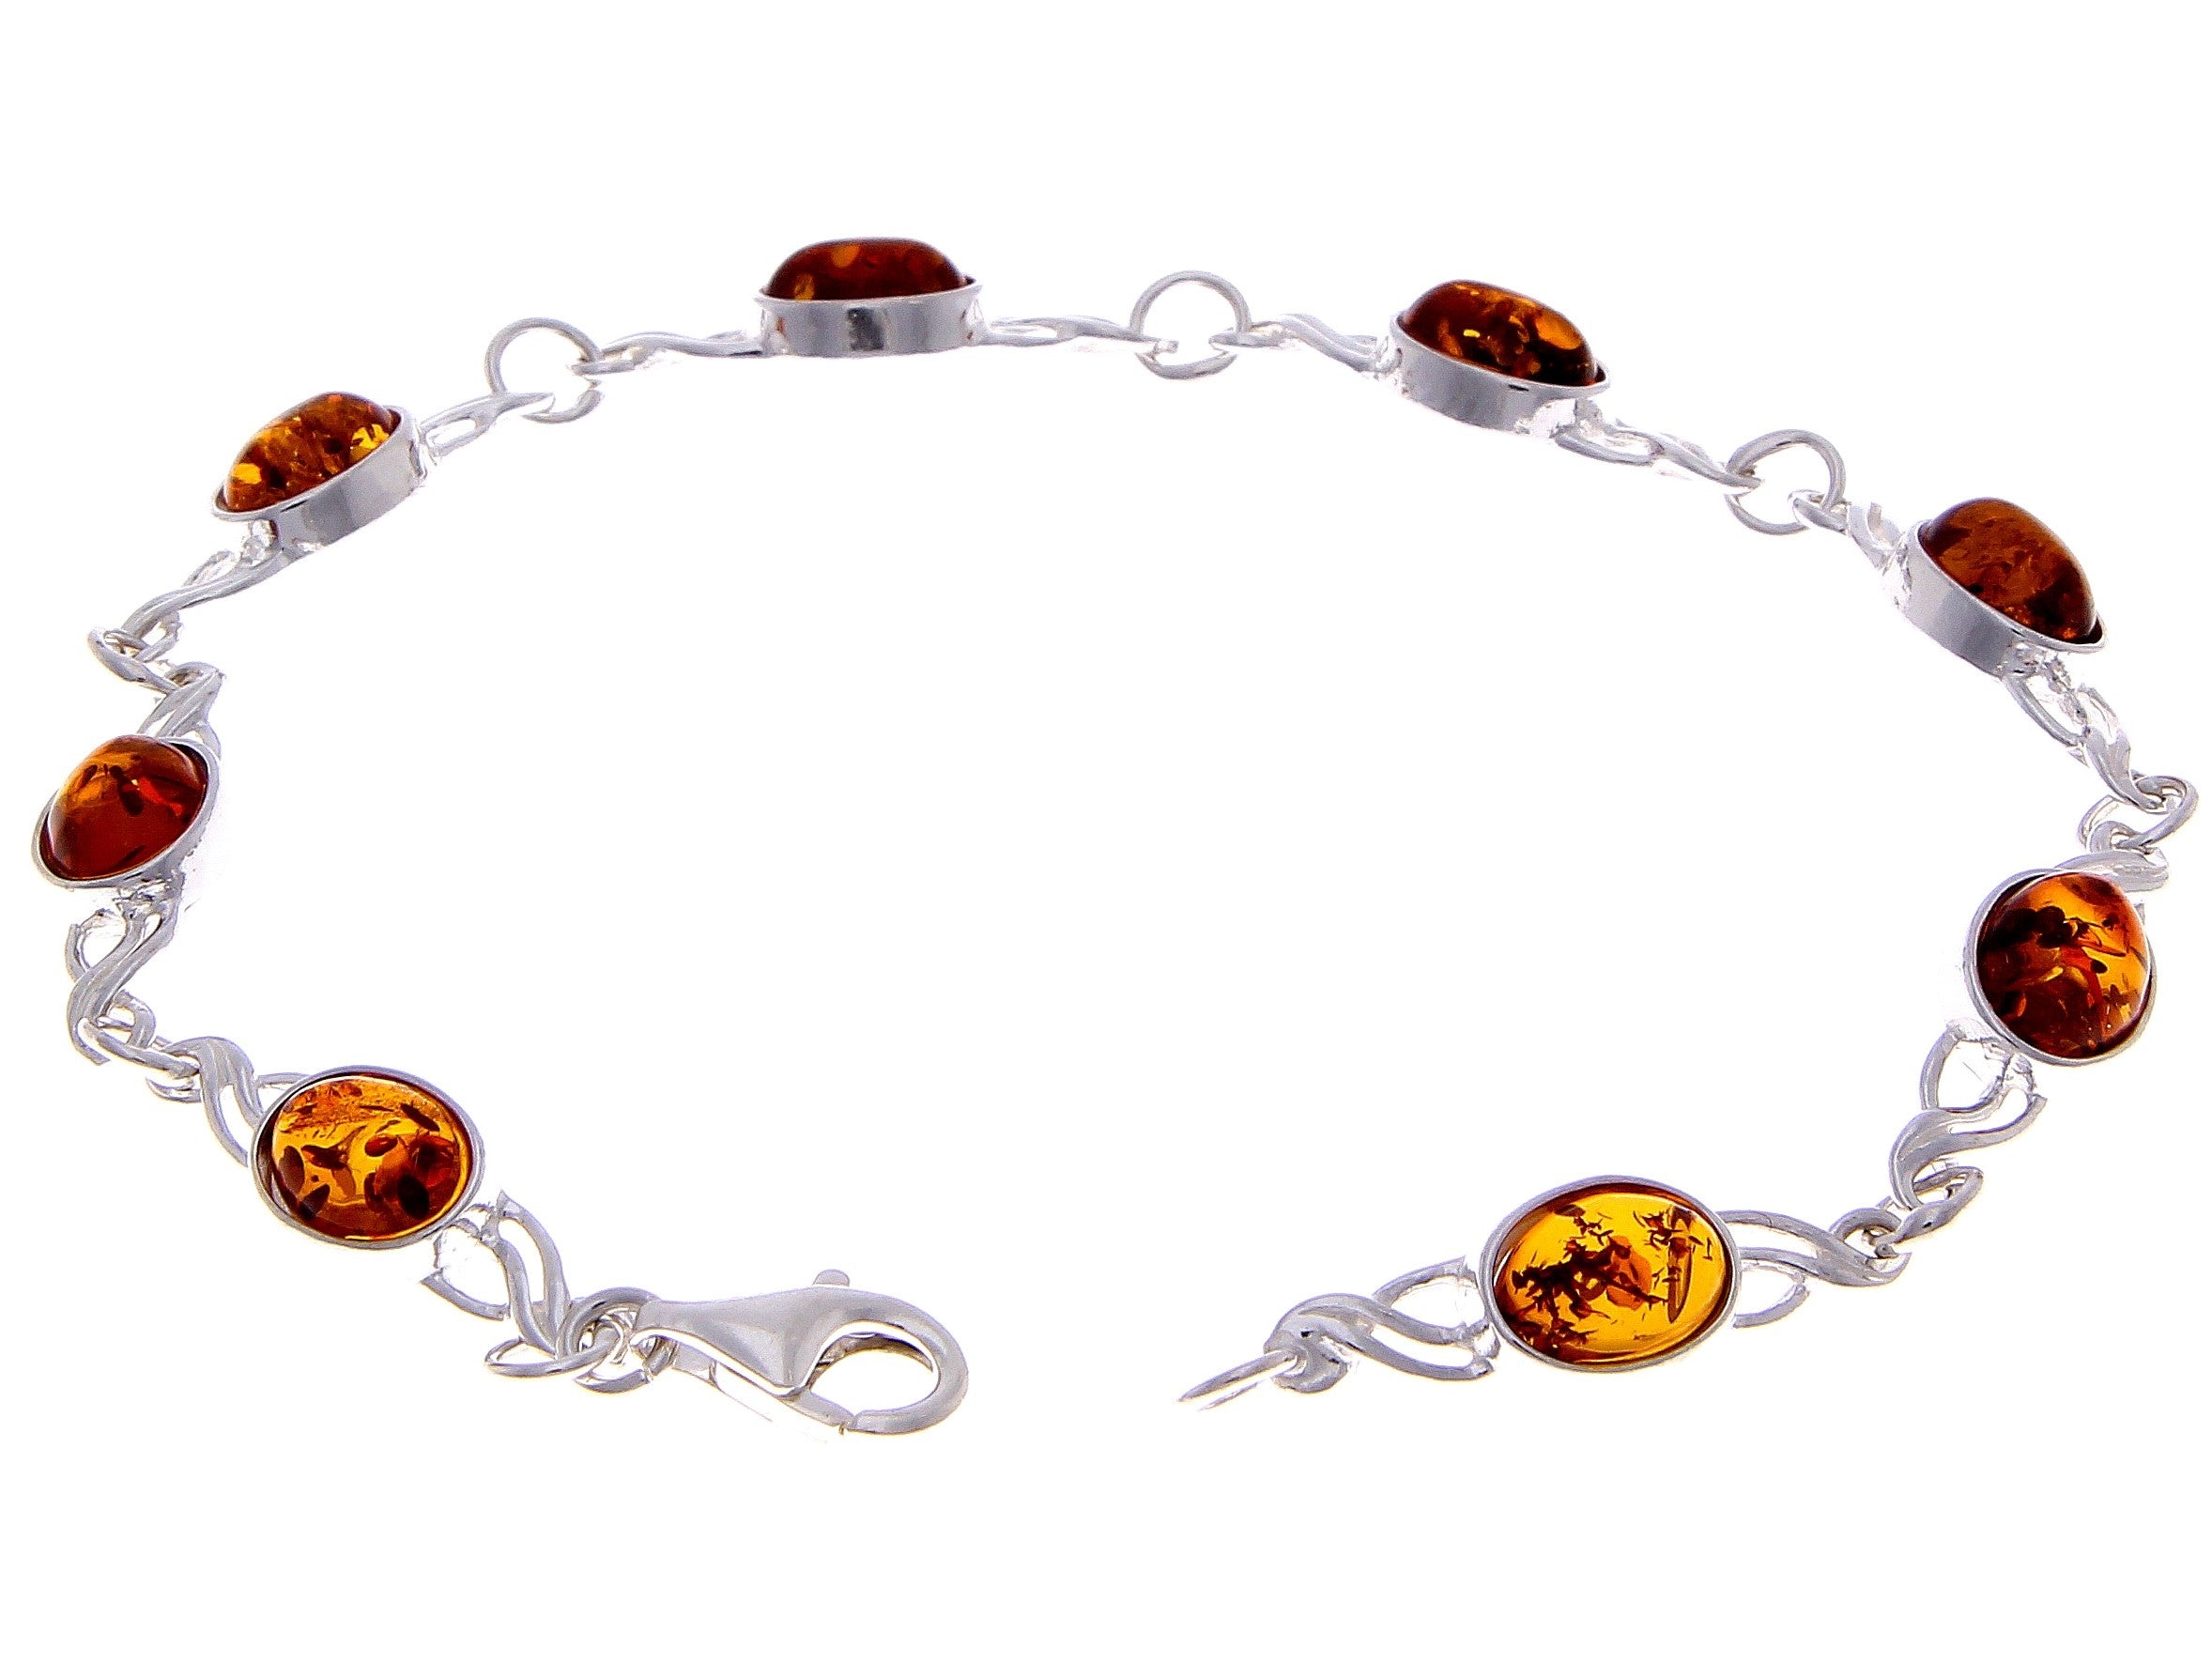 925 Sterling Silver & Genuine Baltic Amber Bracelet Link 21.5 cm  - 3178